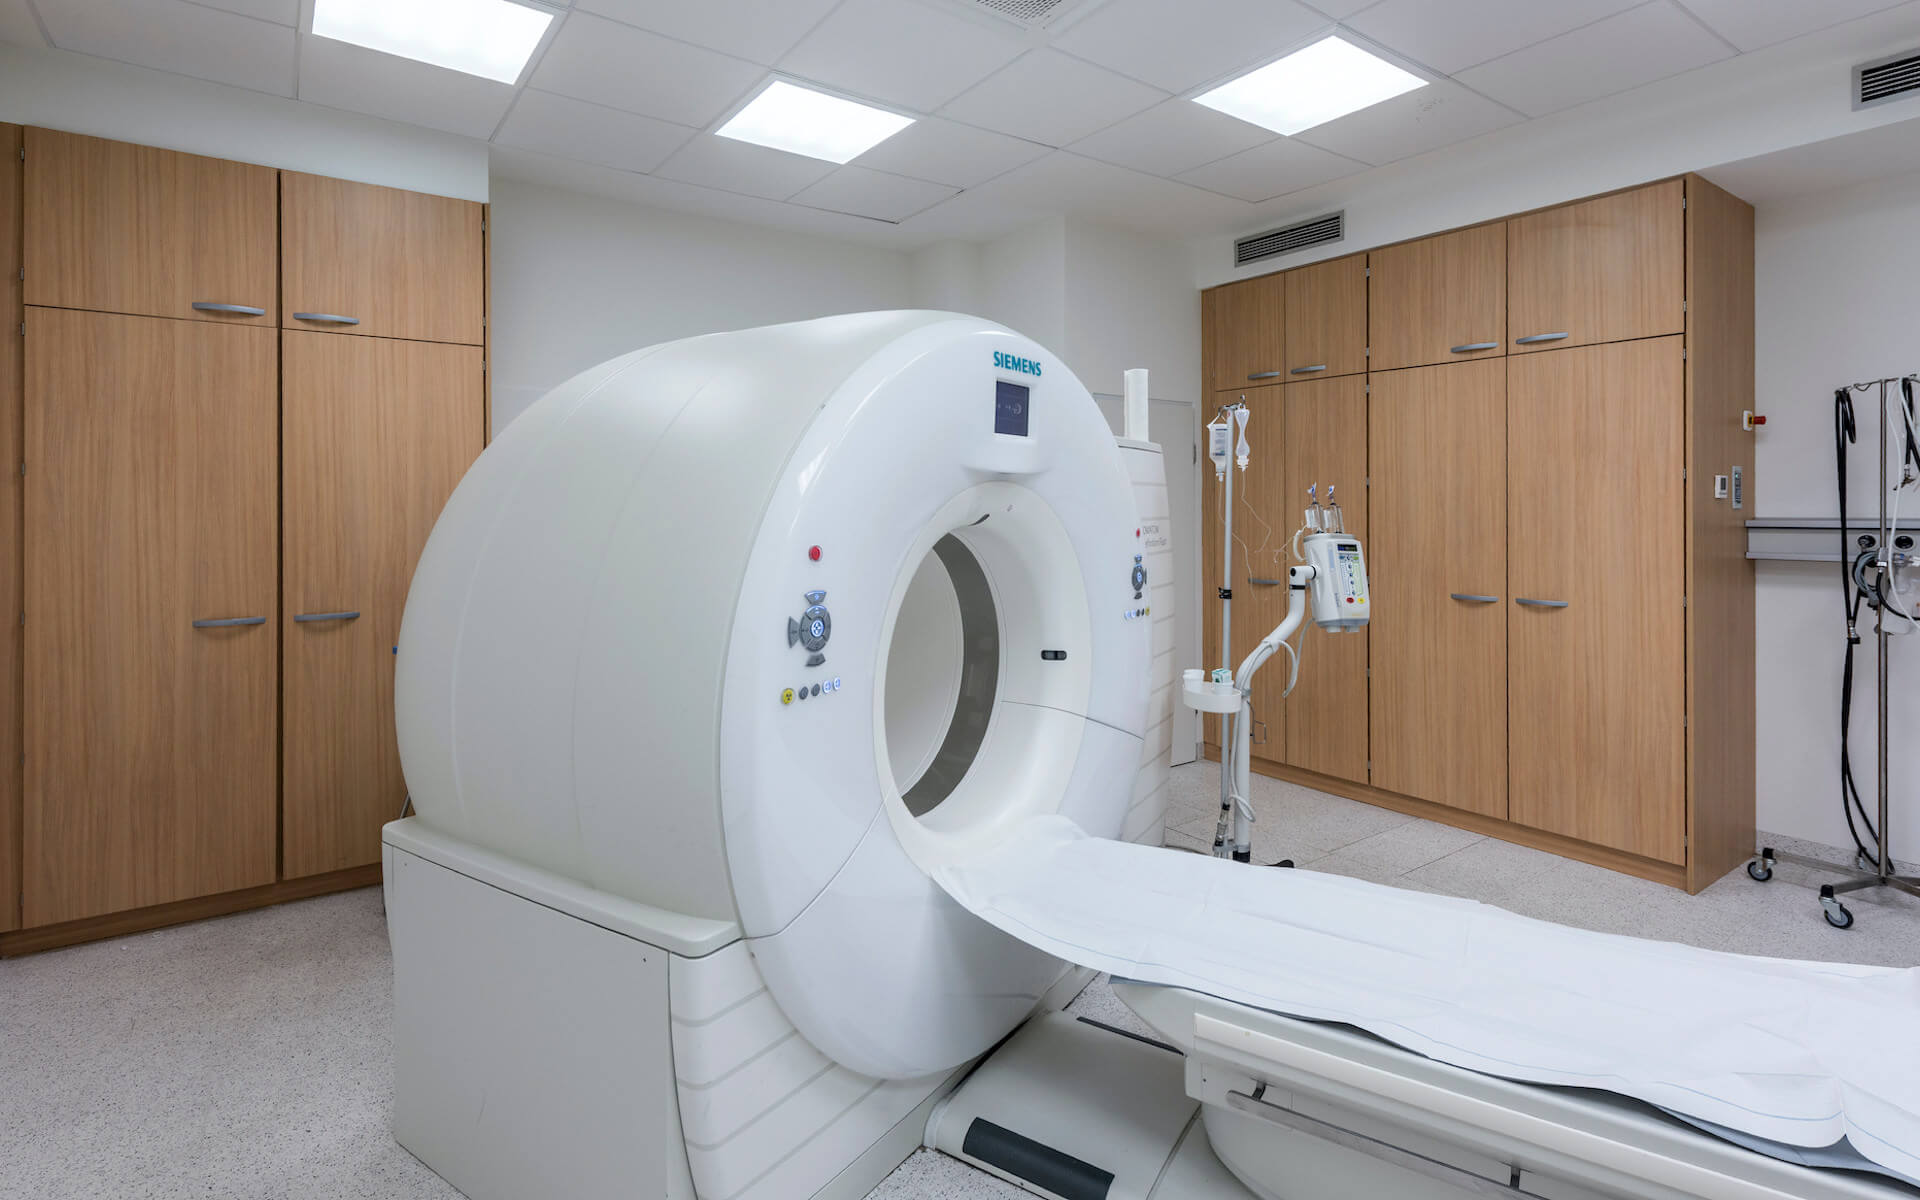 Raum für bildgebende Verfahren wie CT und MRT in einer Klinik